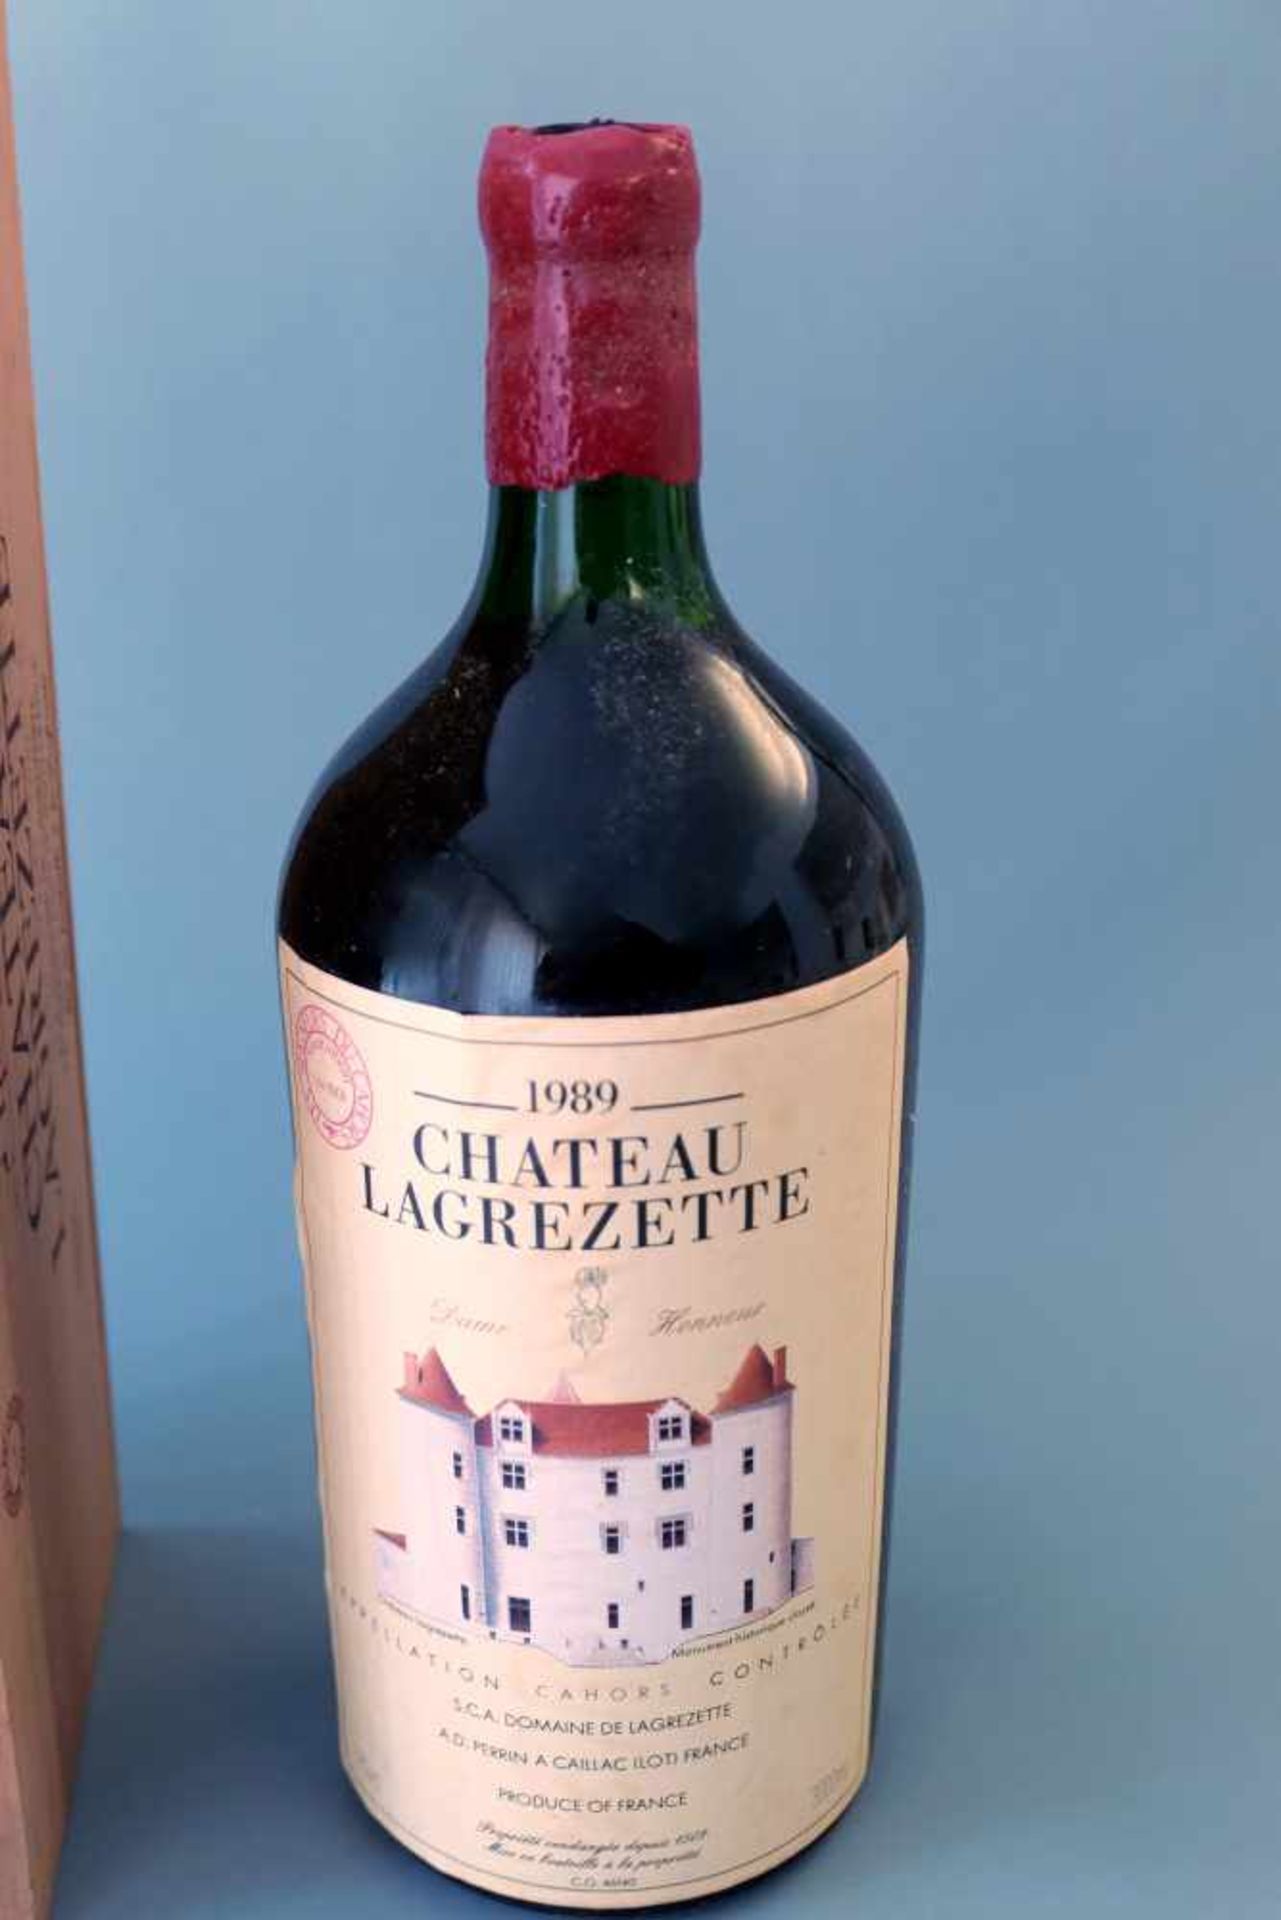 Chateau LagrezetteJahrgang 1989, Inhalt 3000 ml, Cahors, Südwestfrankreich. Durchgehend